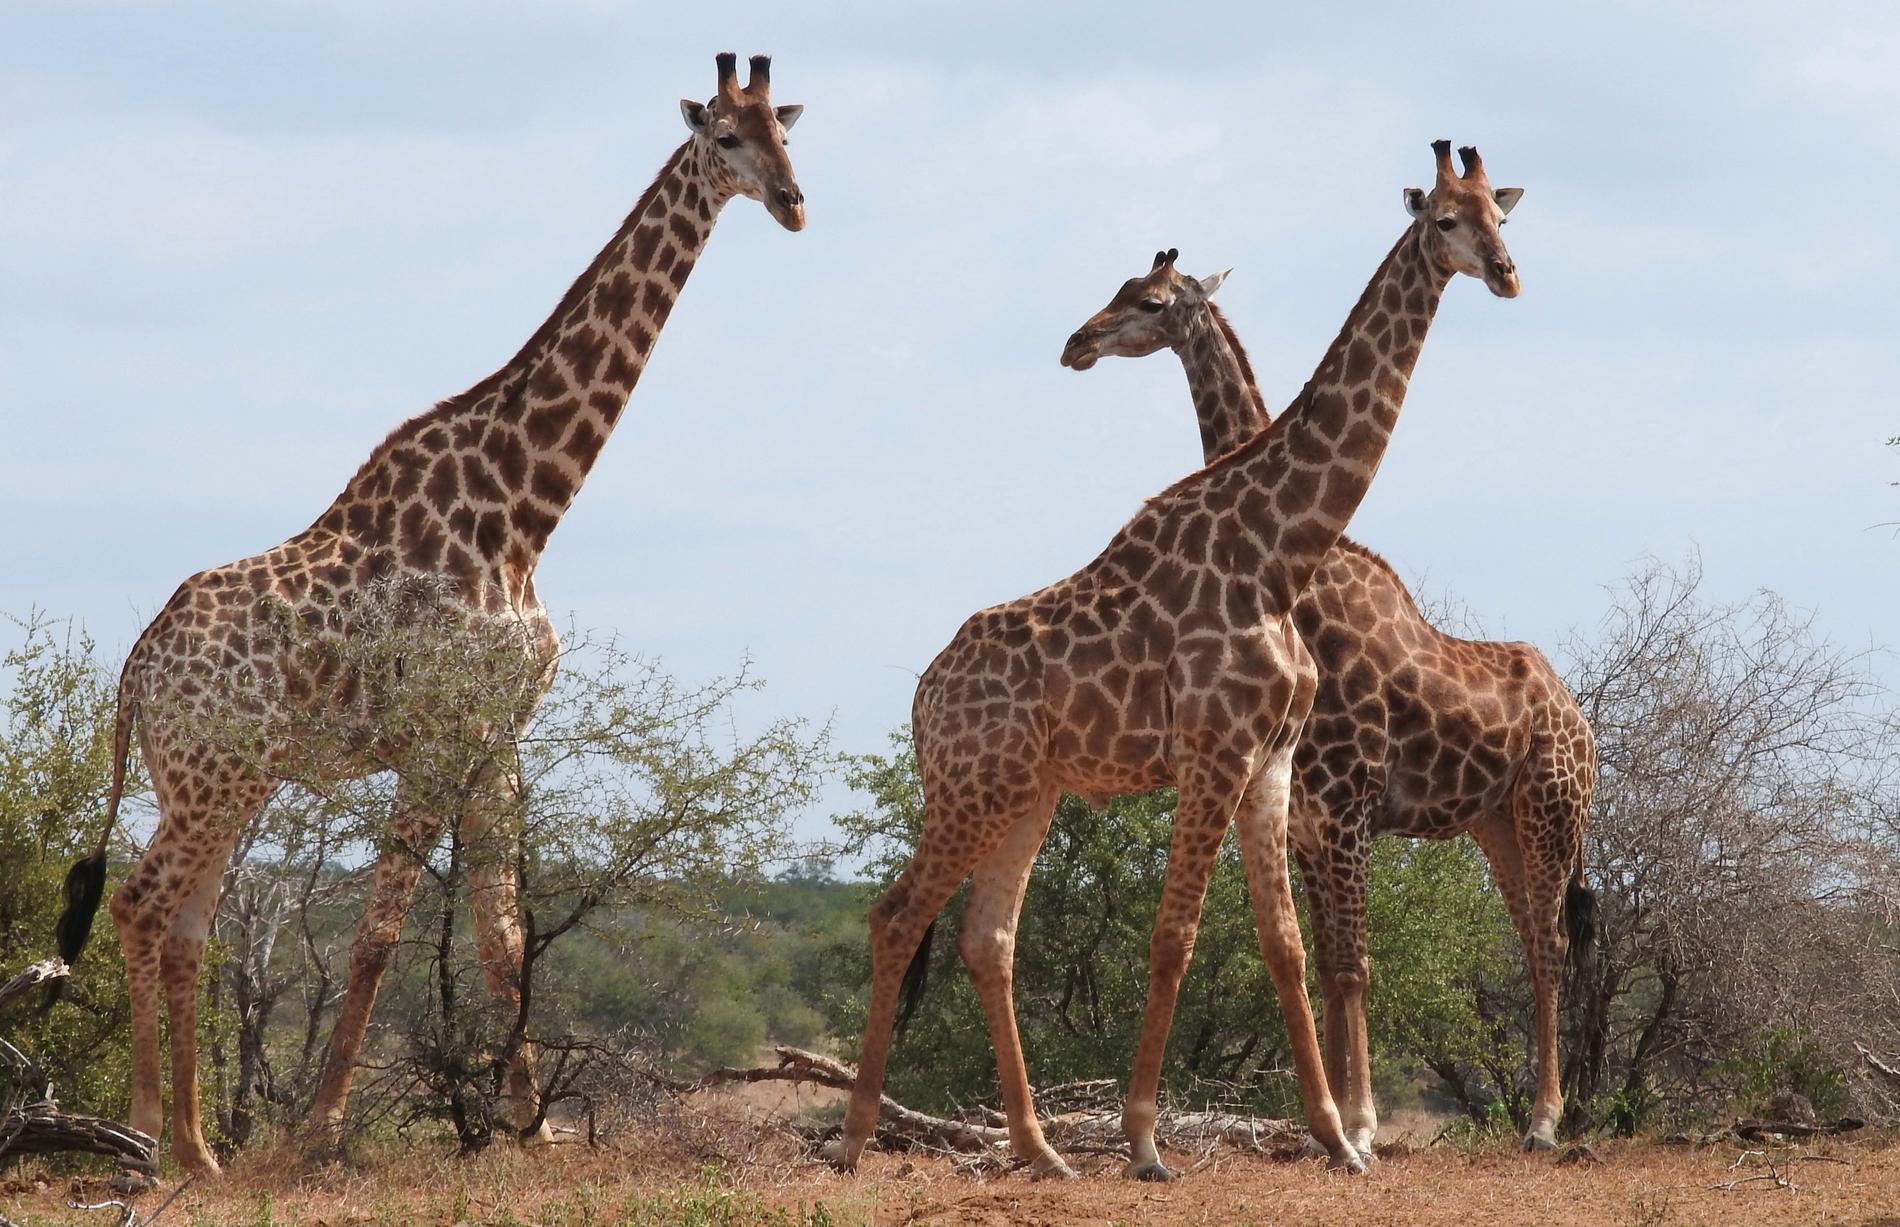 De båda rymningsbenägna girafferna hade importerats från Afrika. Arkivbild från Sydafrika – djuren på bilden har inte direkt med notisen att göra.